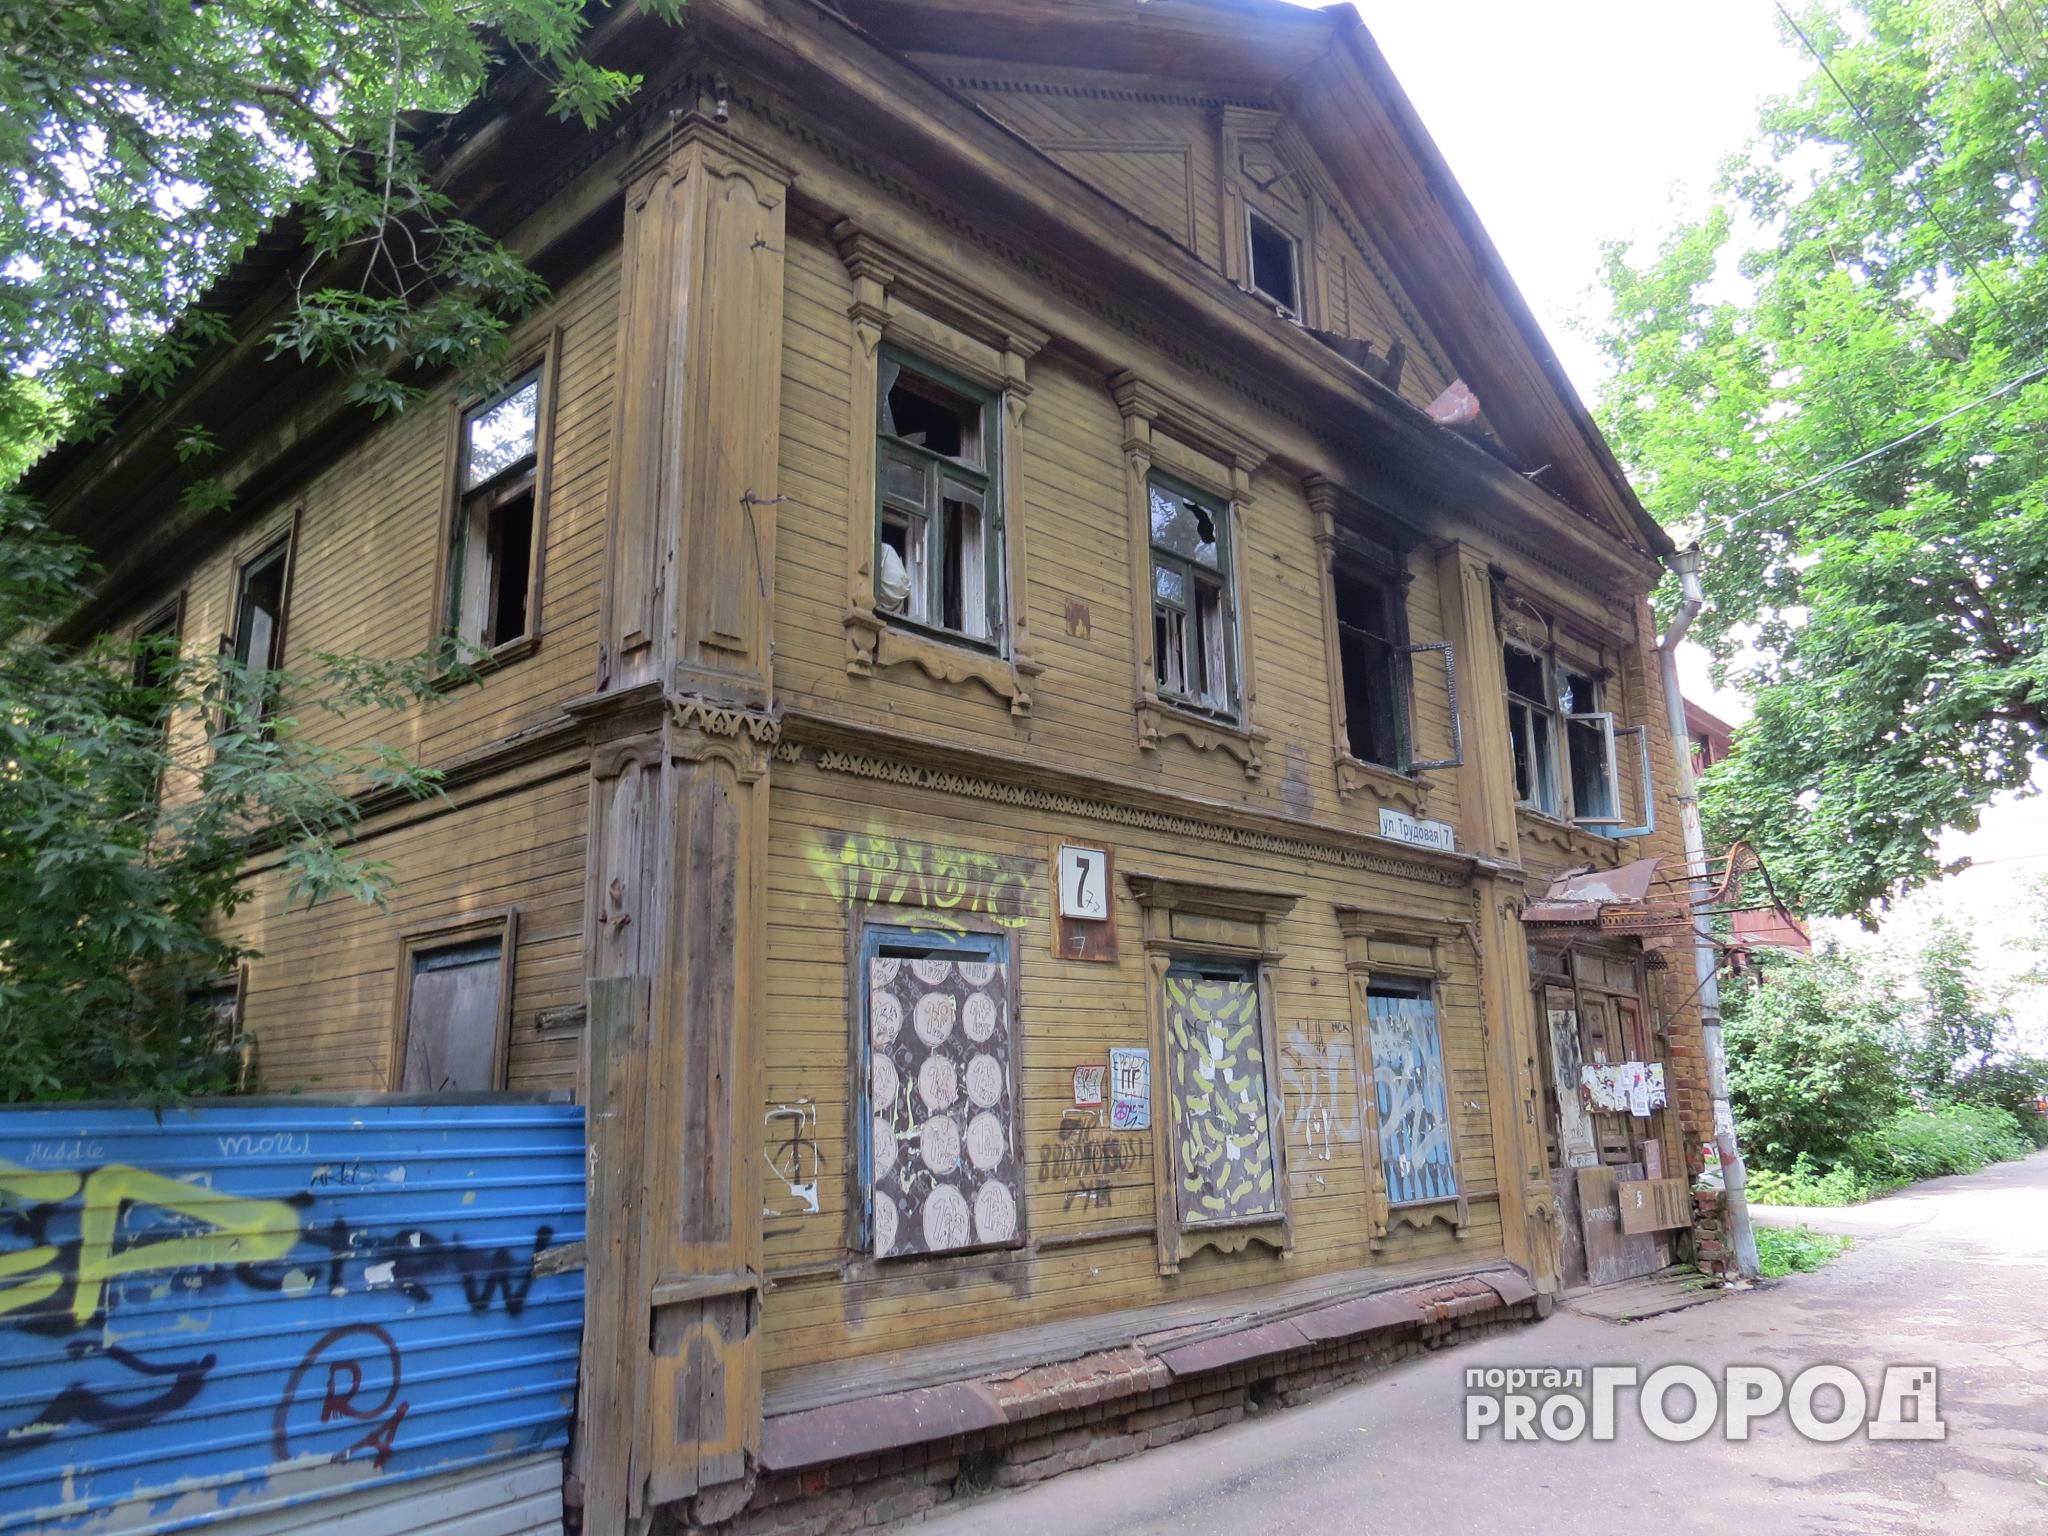 124 нижегородских дома попали в перечень ветхого и аварийного жилья